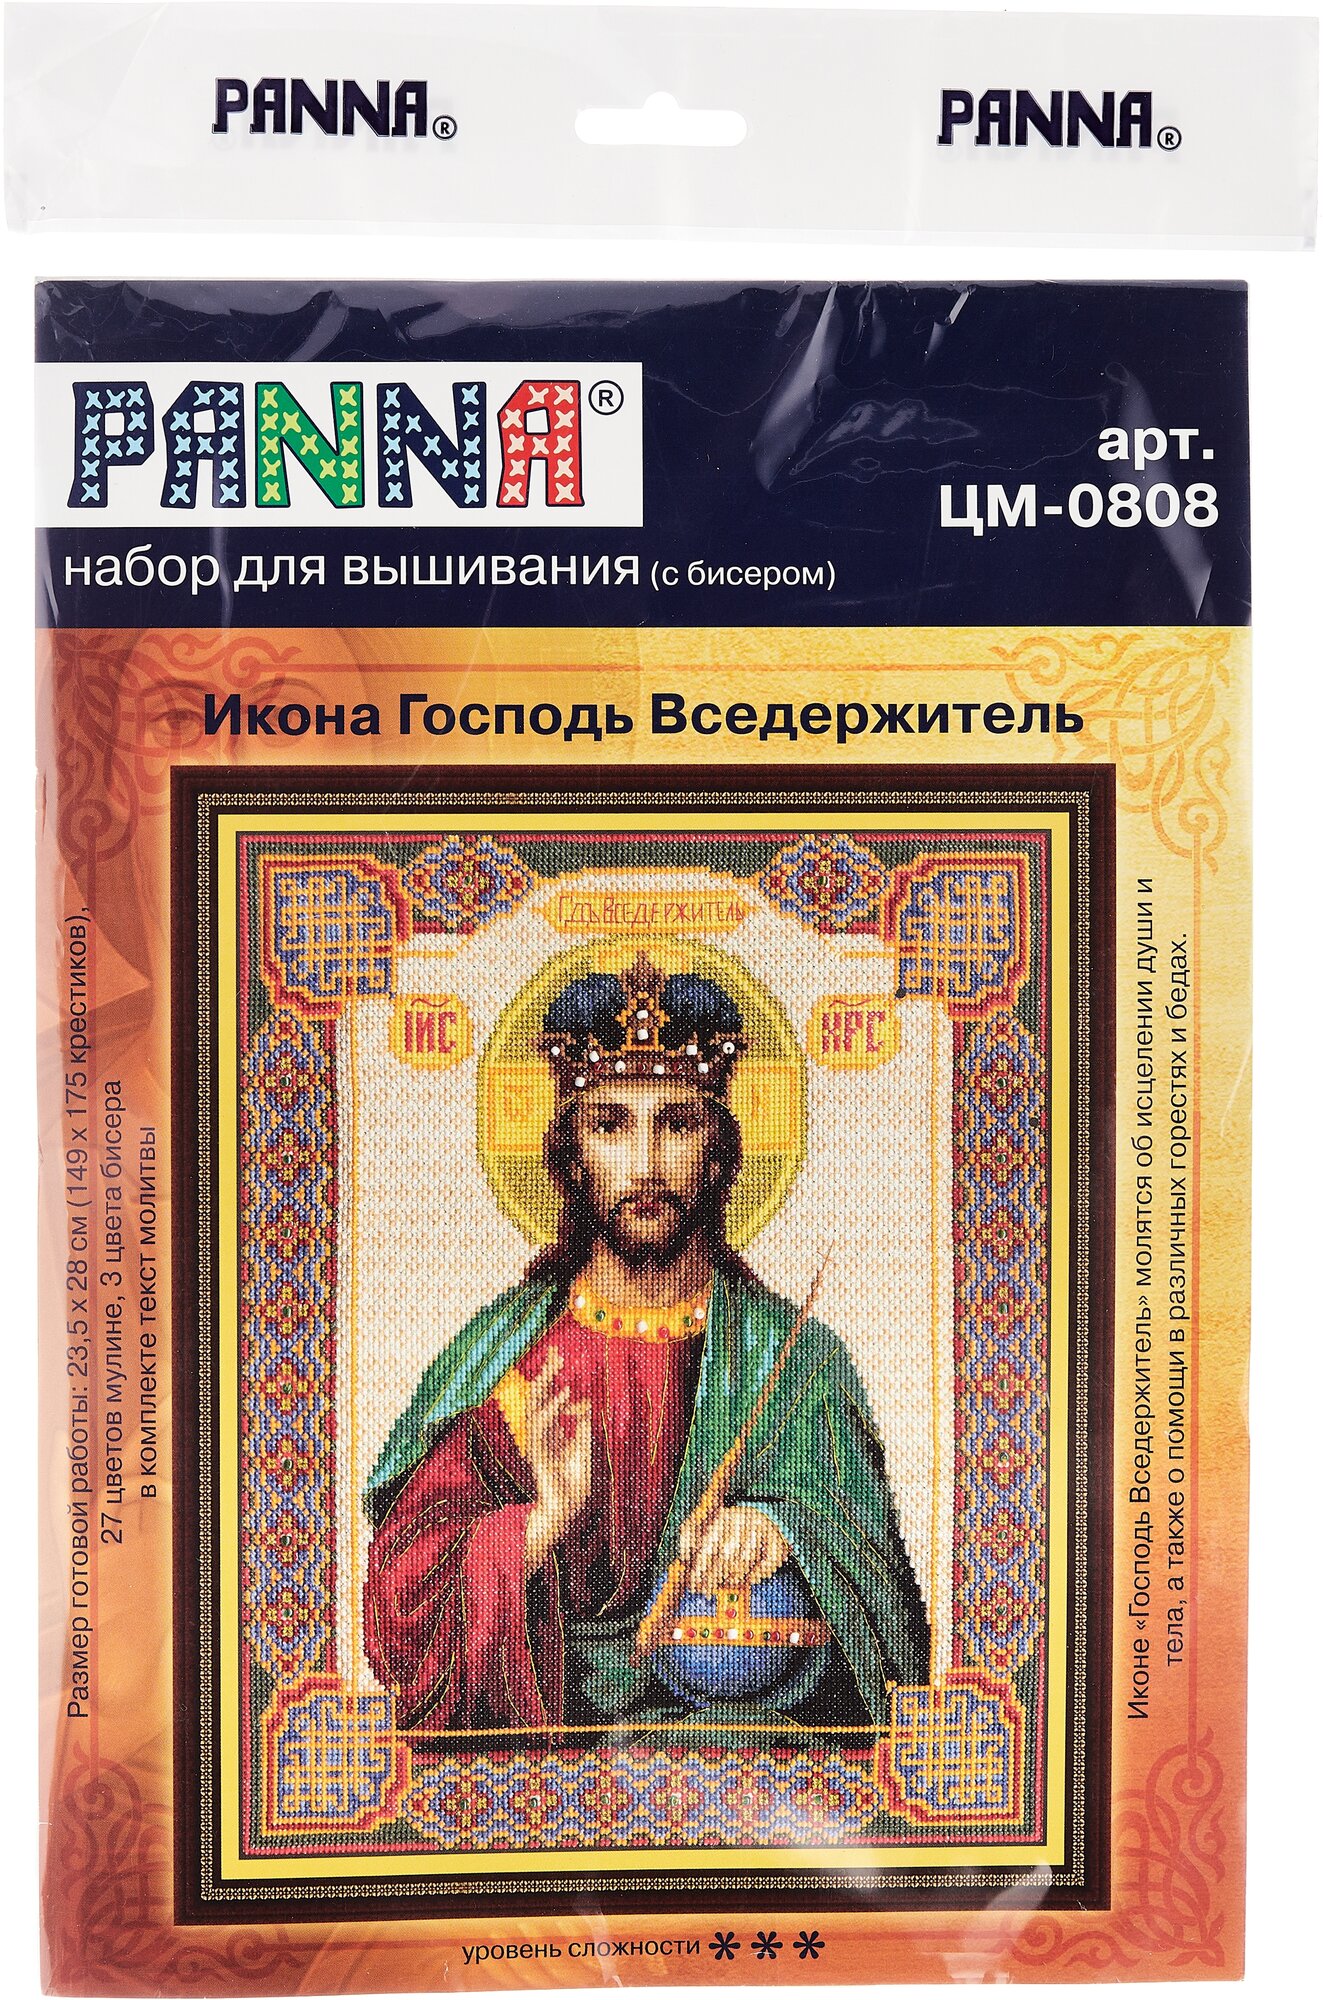 ЦМ-0808 "Икона Господь Вседержитель" PANNA - фото №5